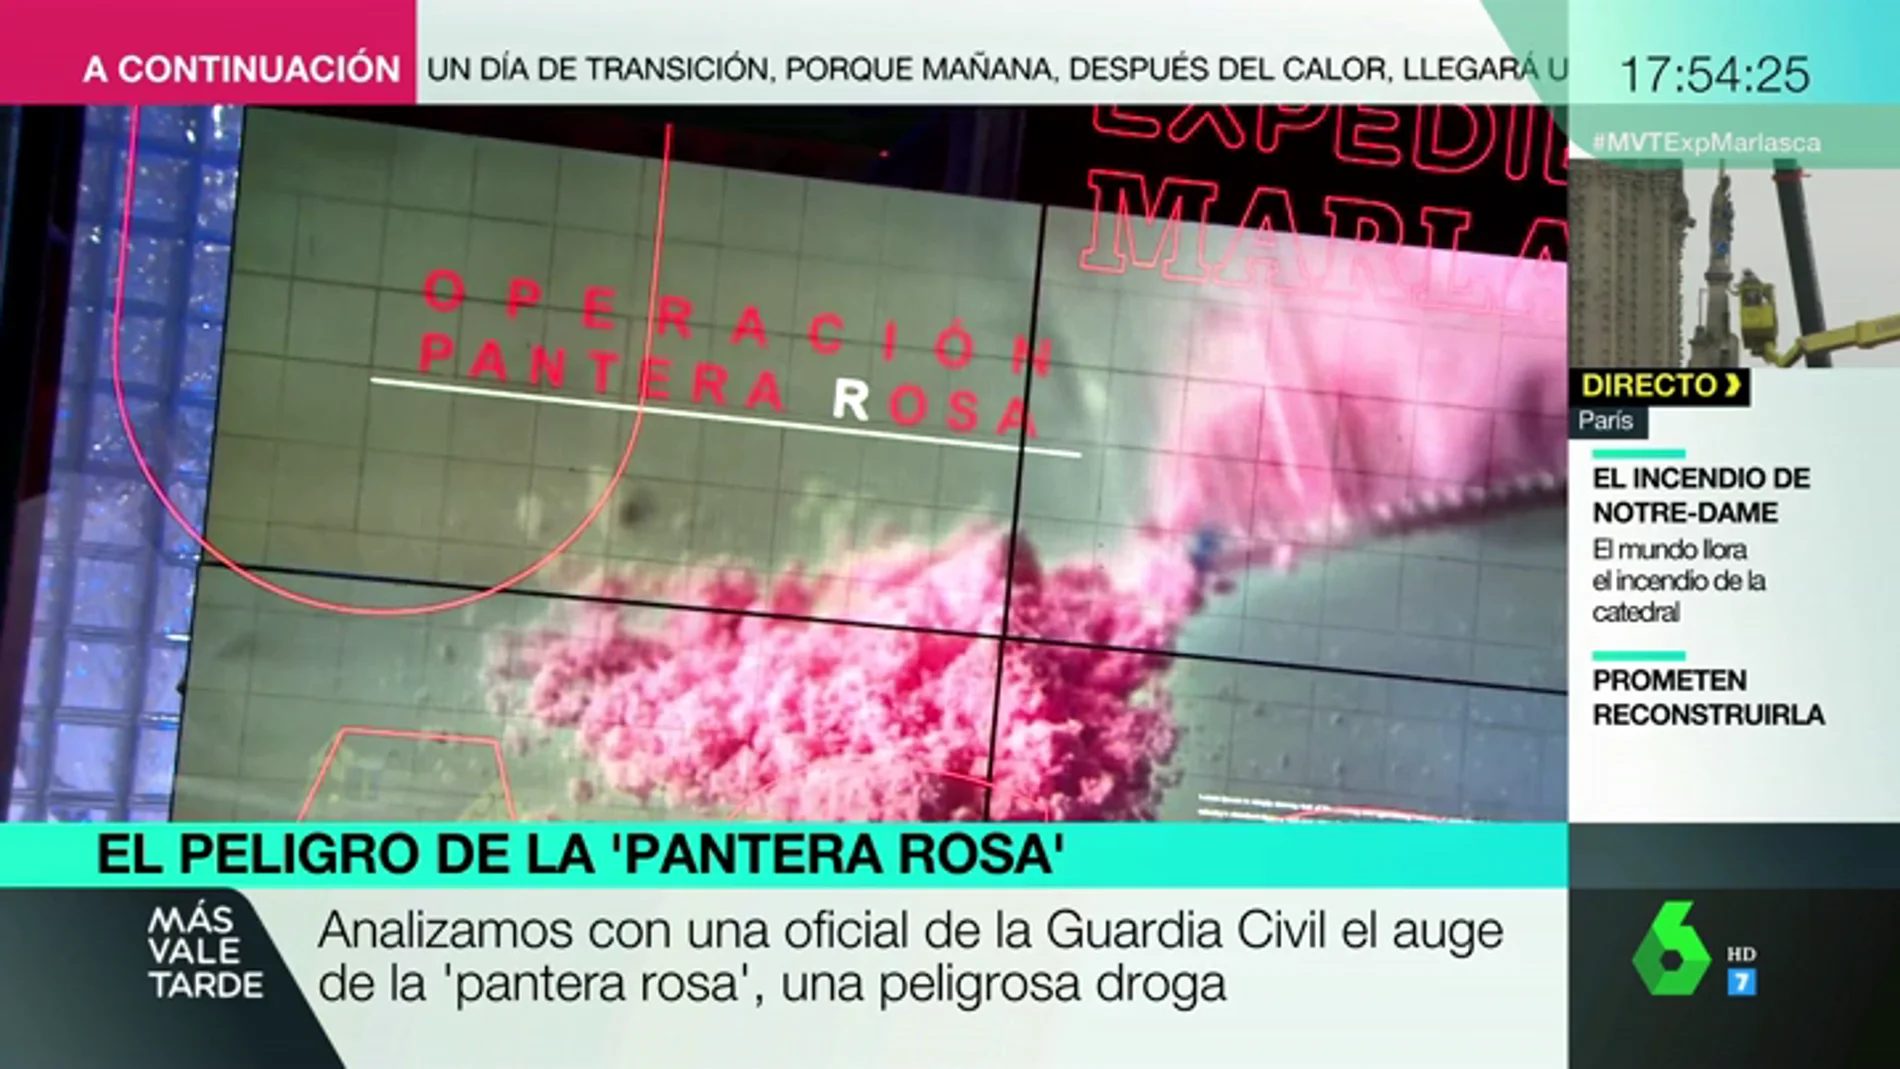 Qué es y cómo funciona la 'pantera rosa', la peligrosa 'droga de la élite' que preocupa a la Guardia Civil